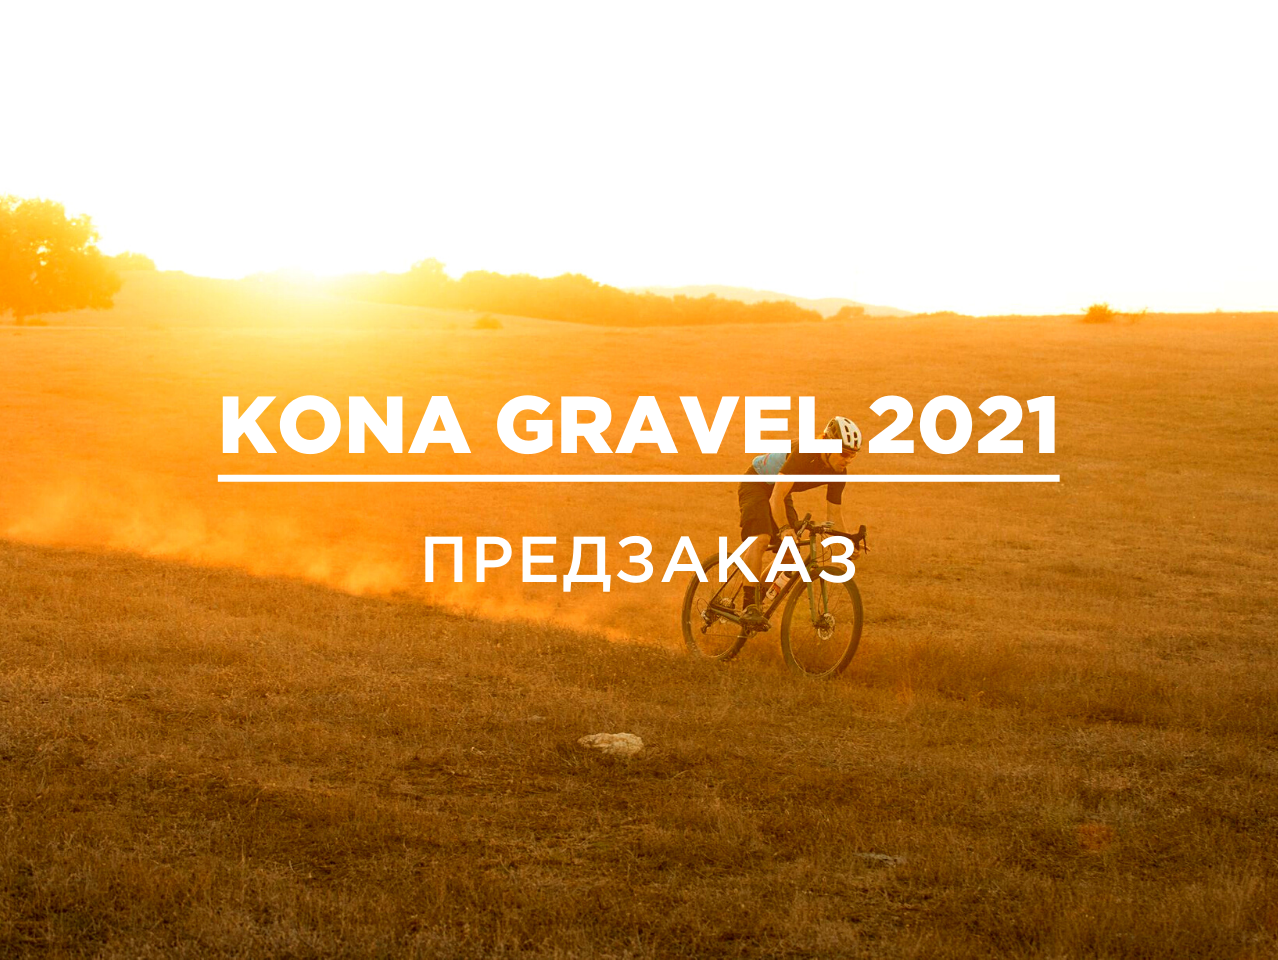 Kona Gravel 2021 Предзаказ. Последняя кампания.